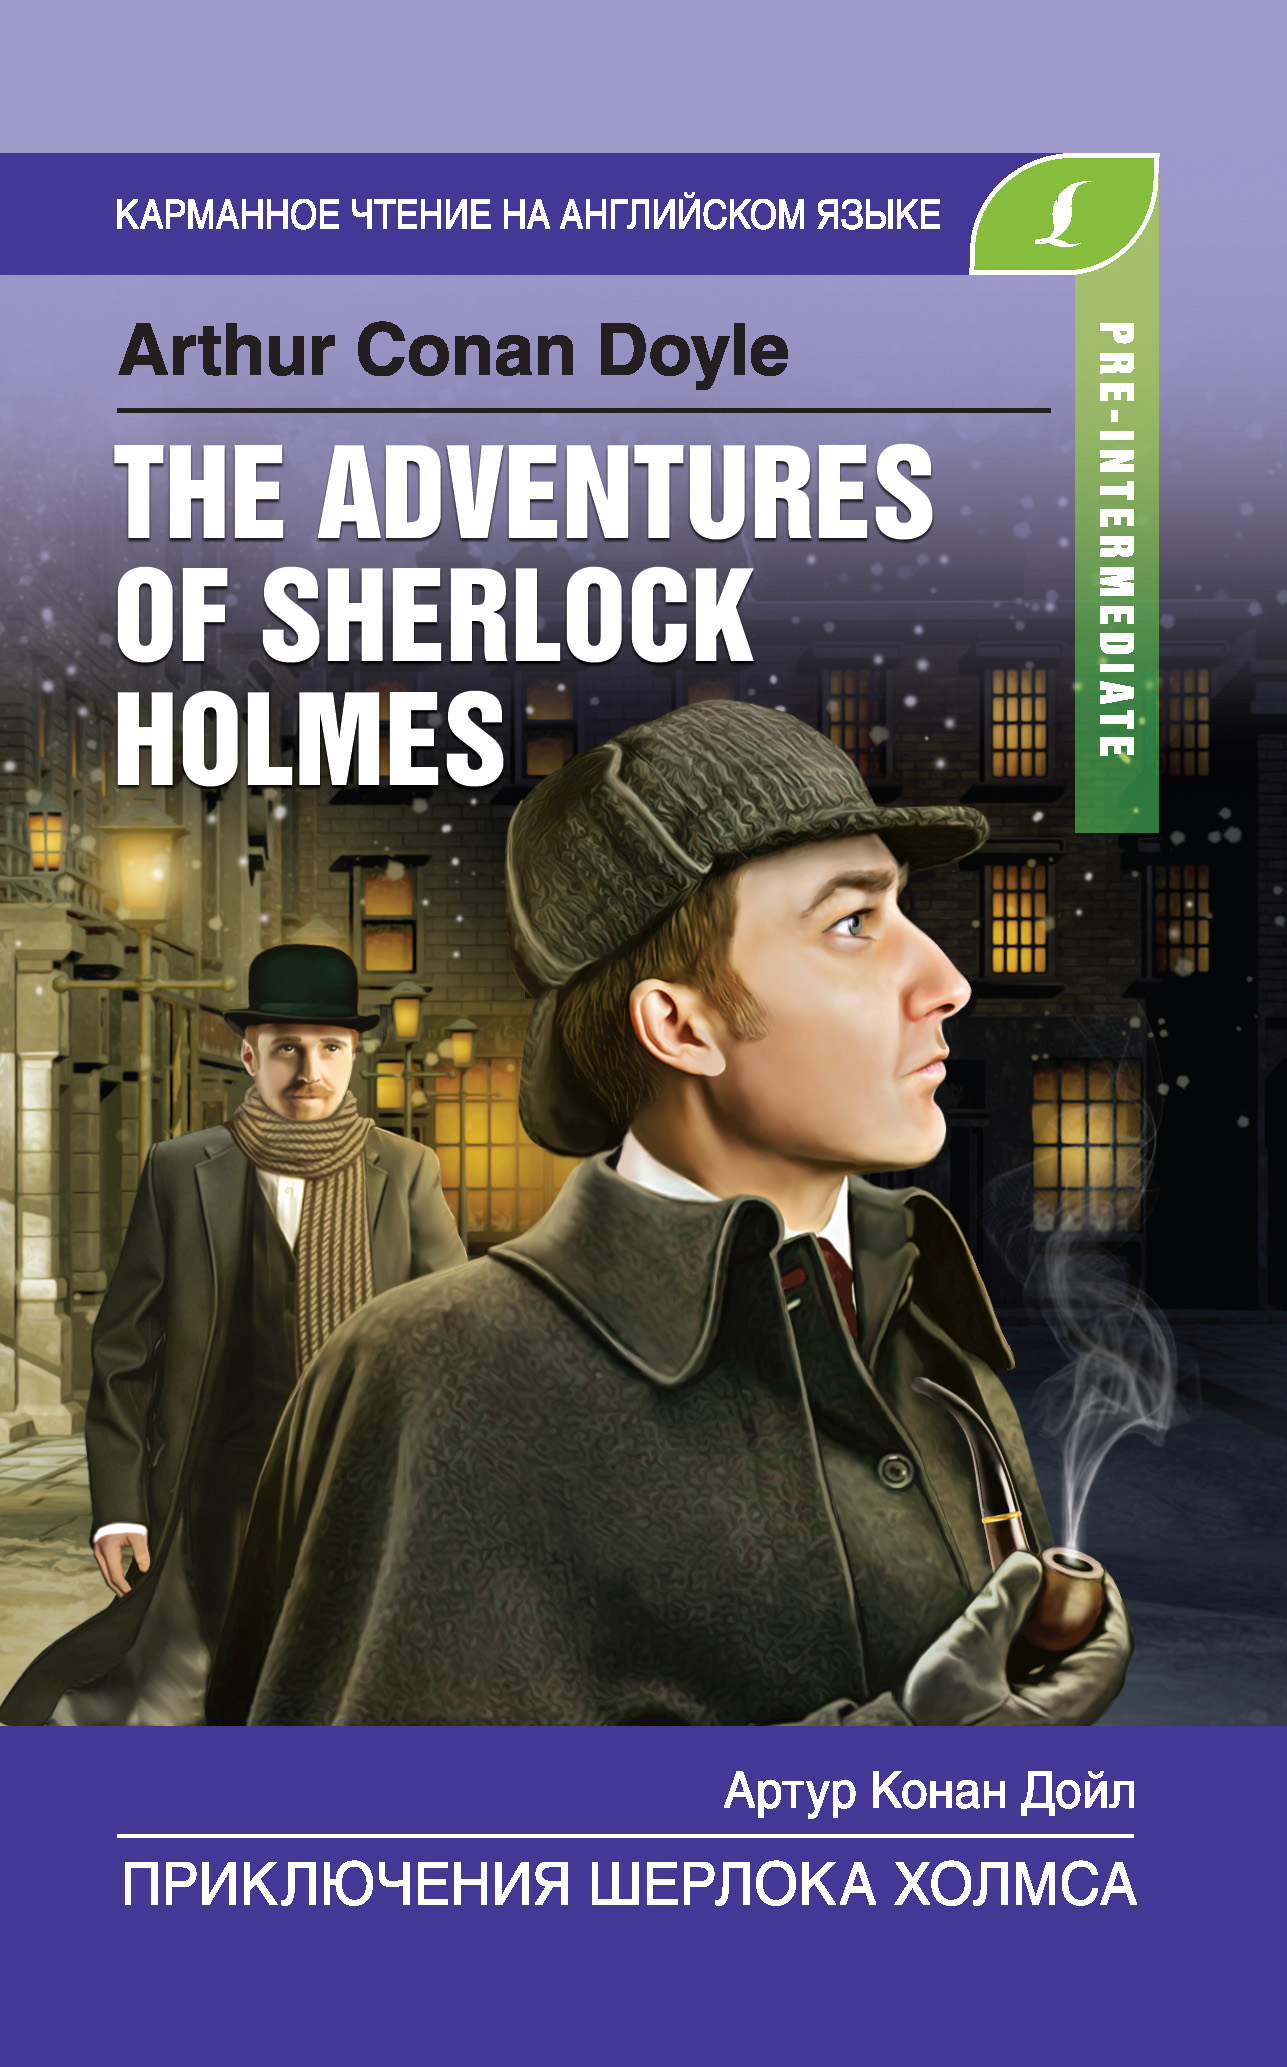 Книга Приключения Шерлока Холмса / The Adventures of Sherlock Holmes из серии Карманное чтение на английском языке, созданная Артур Конан Дойл, может относится к жанру Иностранные языки, Классические детективы. Стоимость электронной книги Приключения Шерлока Холмса / The Adventures of Sherlock Holmes с идентификатором 42593084 составляет 89.90 руб.